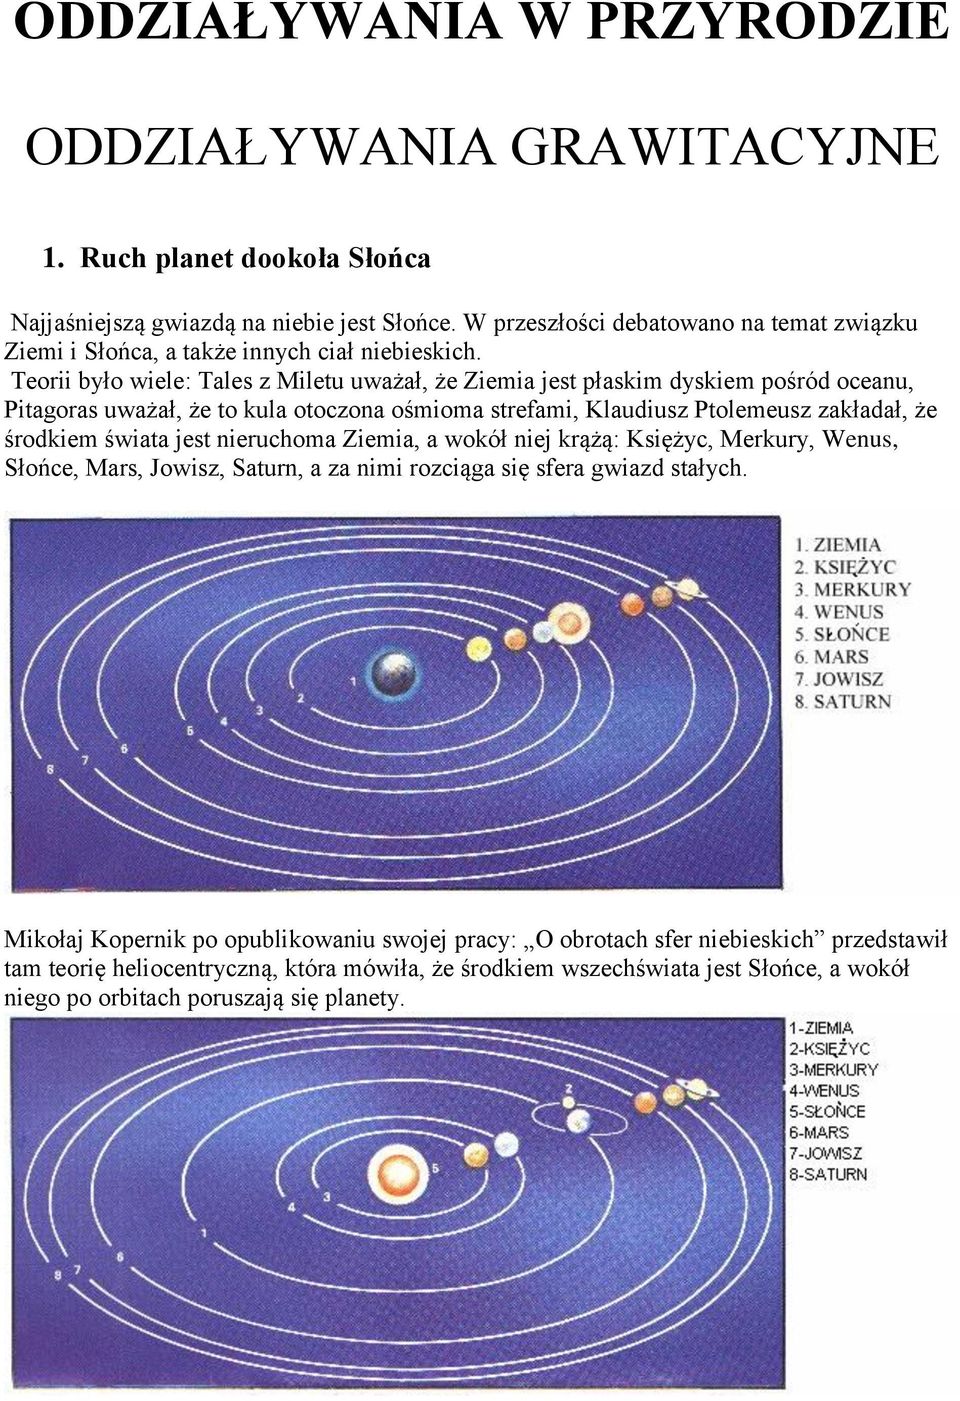 Teorii było wiele: Tales z Miletu uważał, że Ziemia jest płaskim dyskiem pośród oceanu, Pitagoras uważał, że to kula otoczona ośmioma strefami, Klaudiusz Ptolemeusz zakładał, że środkiem świata